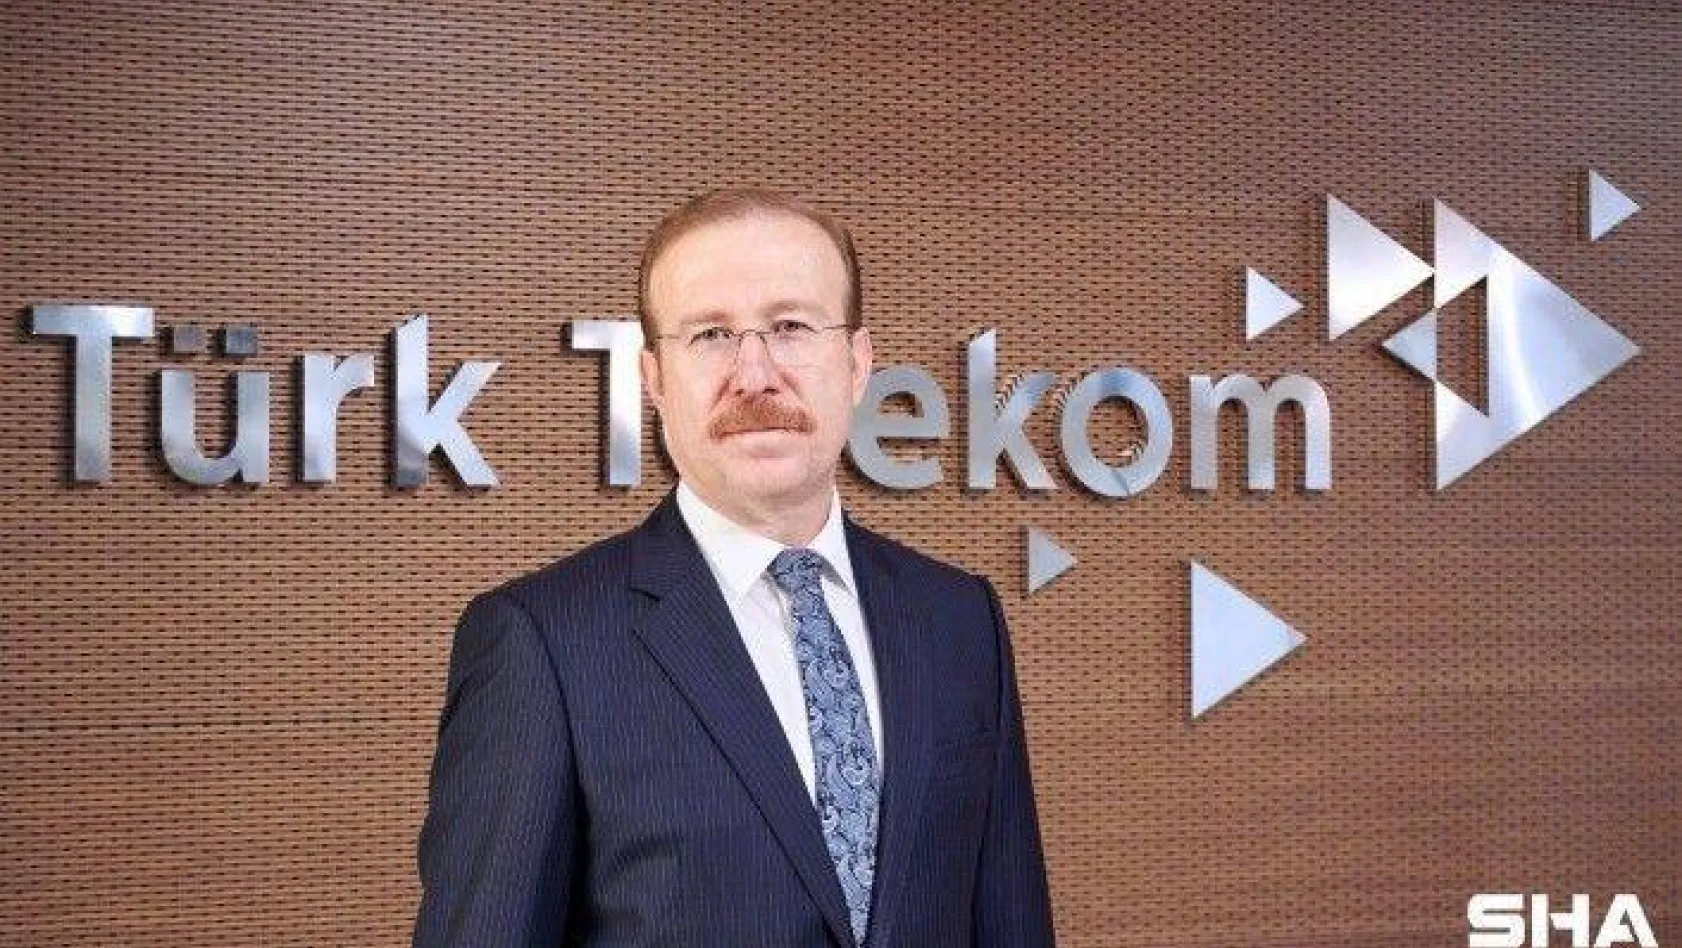 Türk Telekom'dan 'SafeS teps' çözümü ile sosyal mesafenin korunmasına destek